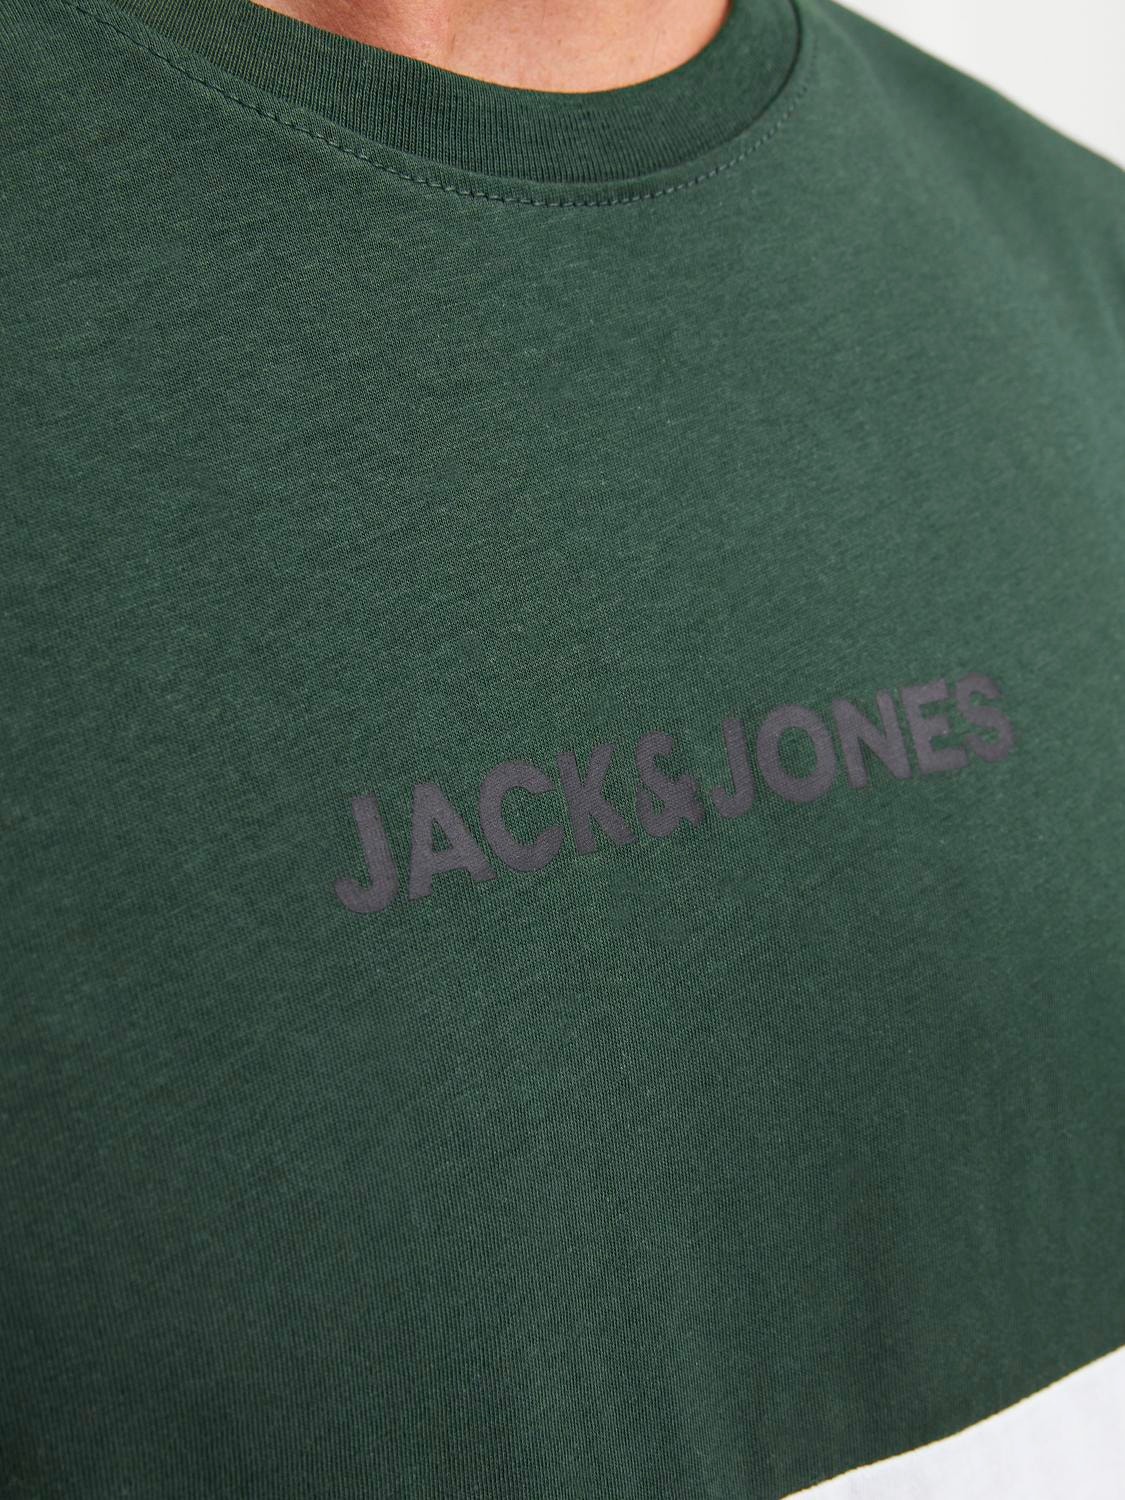 Jack & Jones T-shirt Con color block Girocollo -Mountain View - 12233961